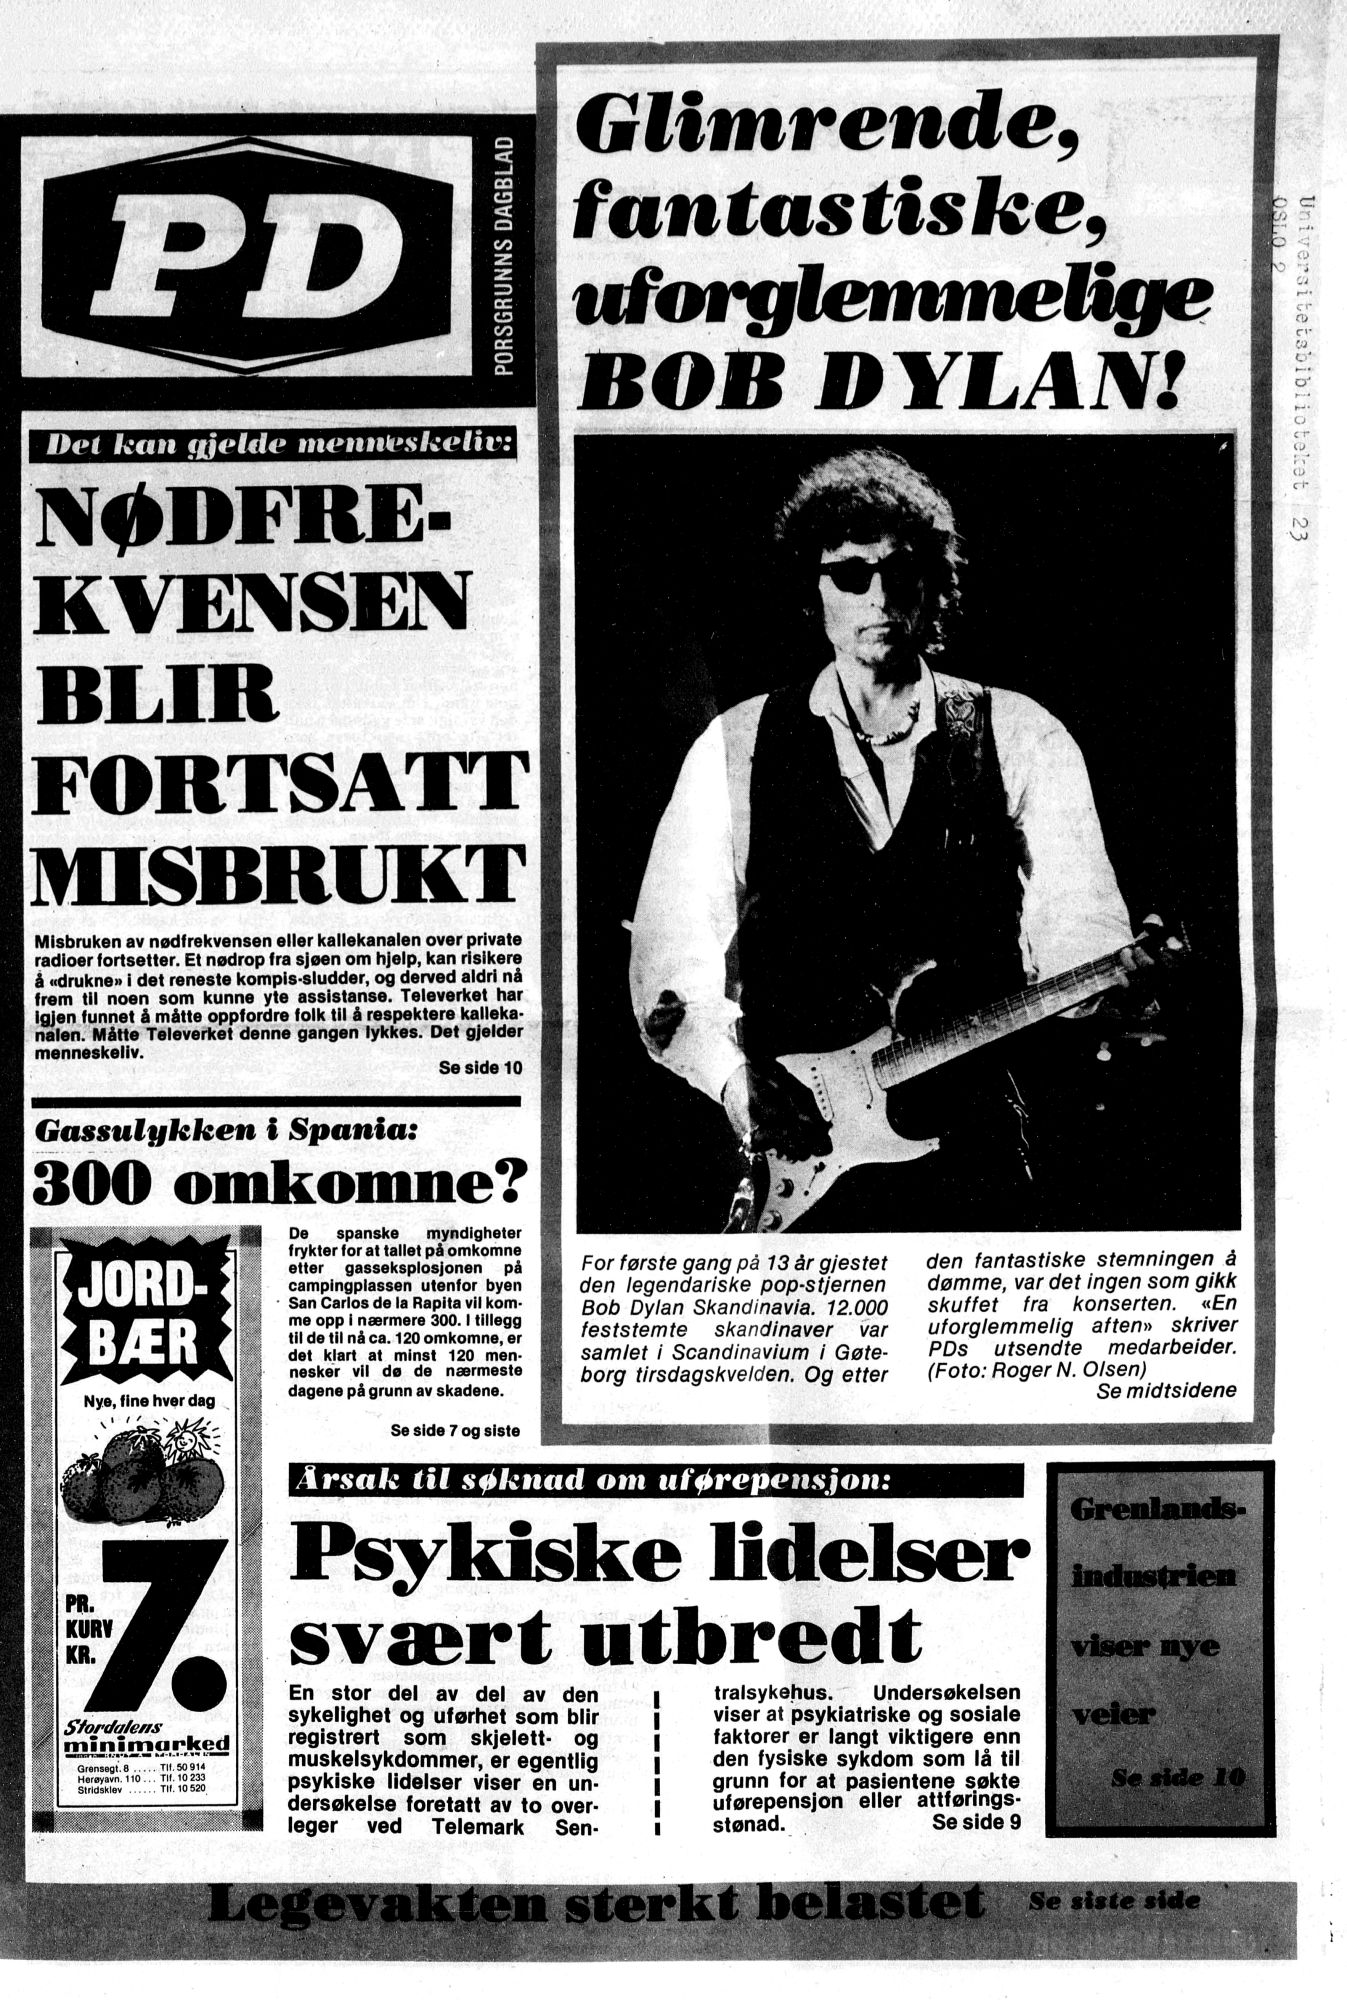 fremtiden-1-november-2014 Bob Dylan front cover